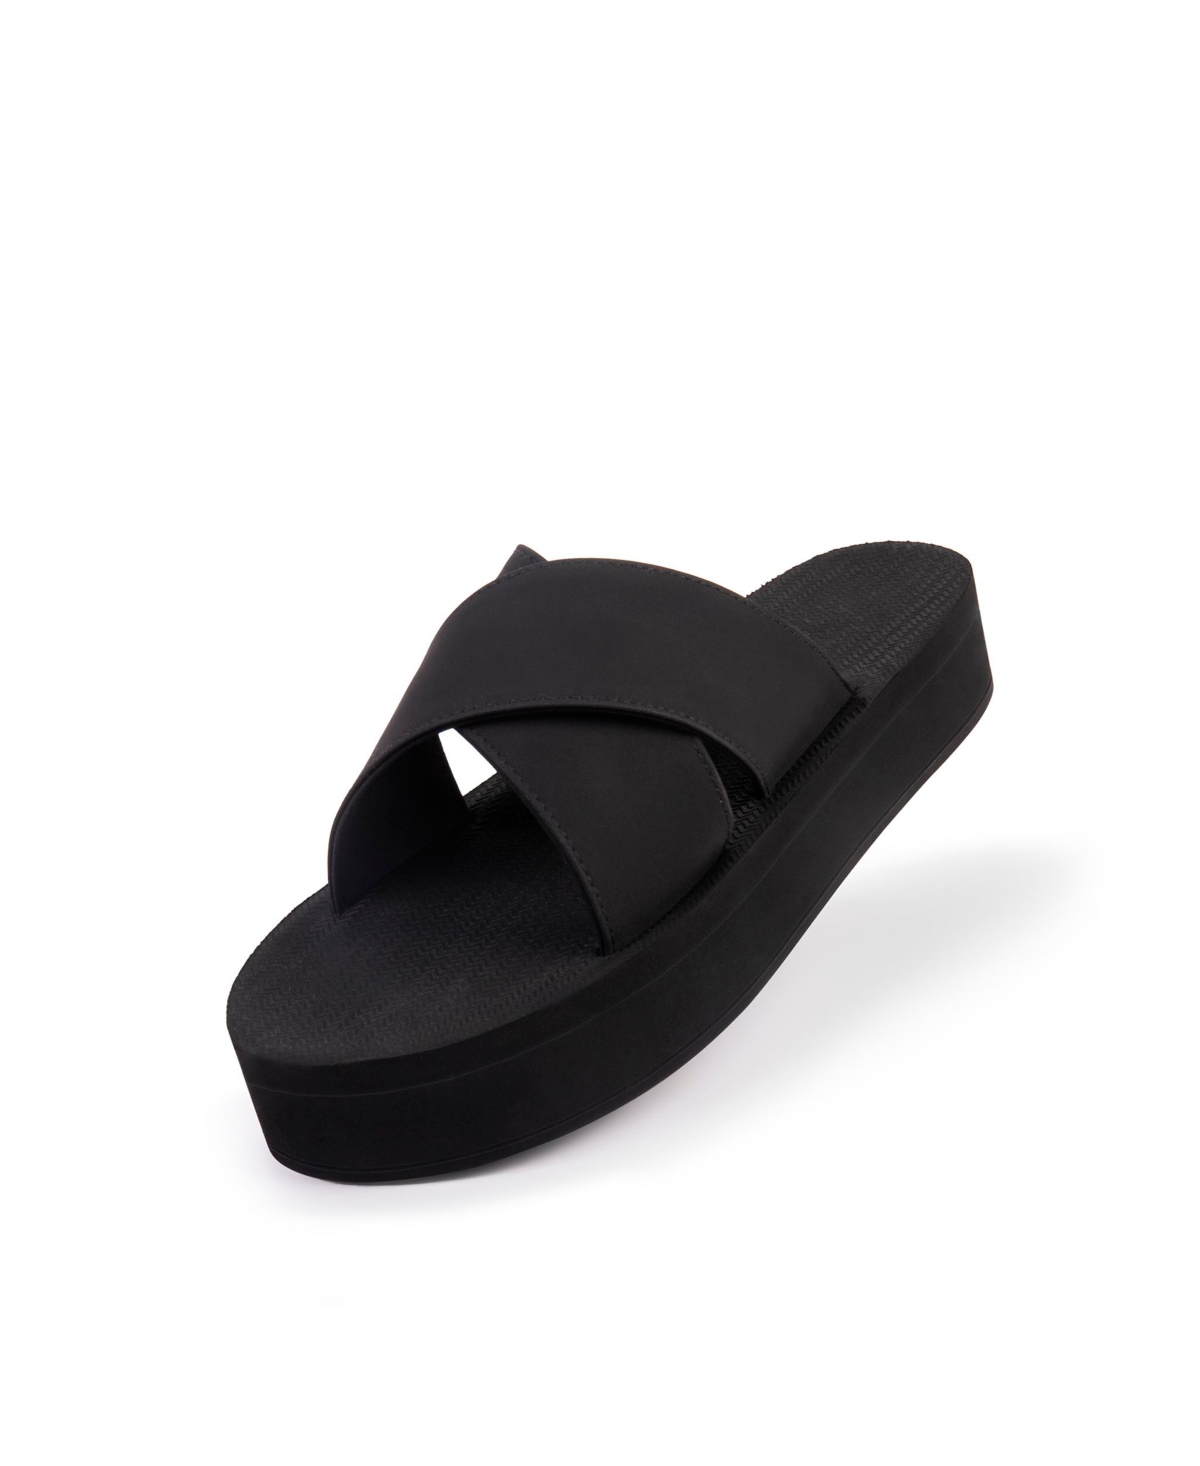 Women's Cross Sandal Platform - Black